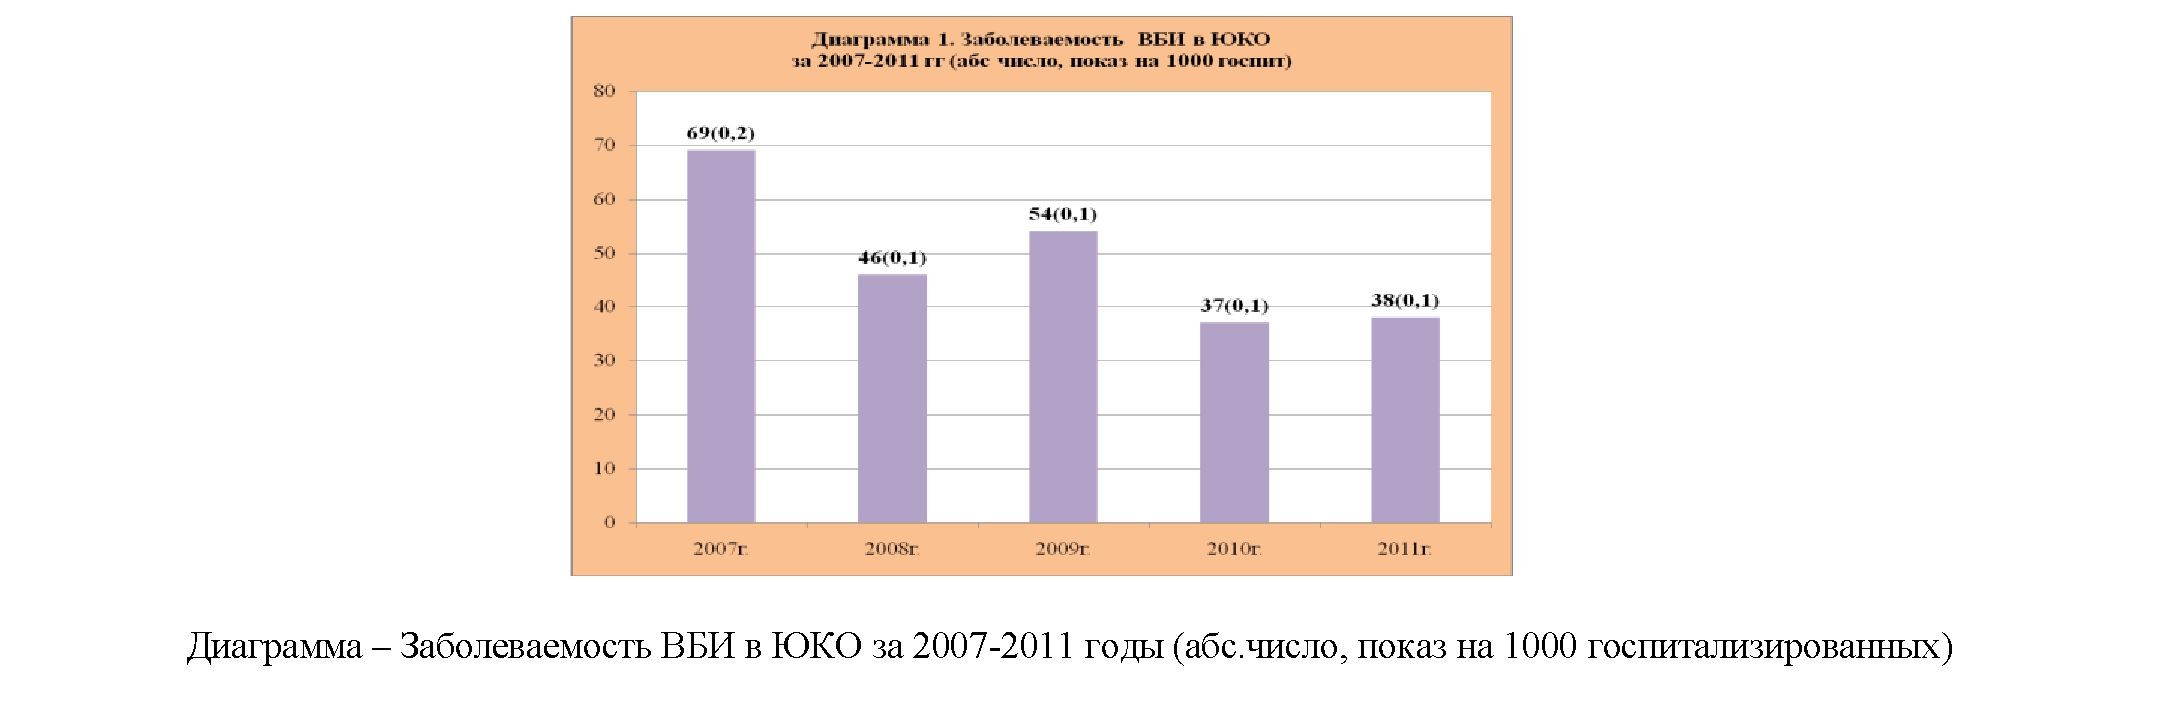 Организация инфекционного контроля и состояние заболеваемости внутрибольничными инфекциями по южно-казахстанской области за 2007-2011гг